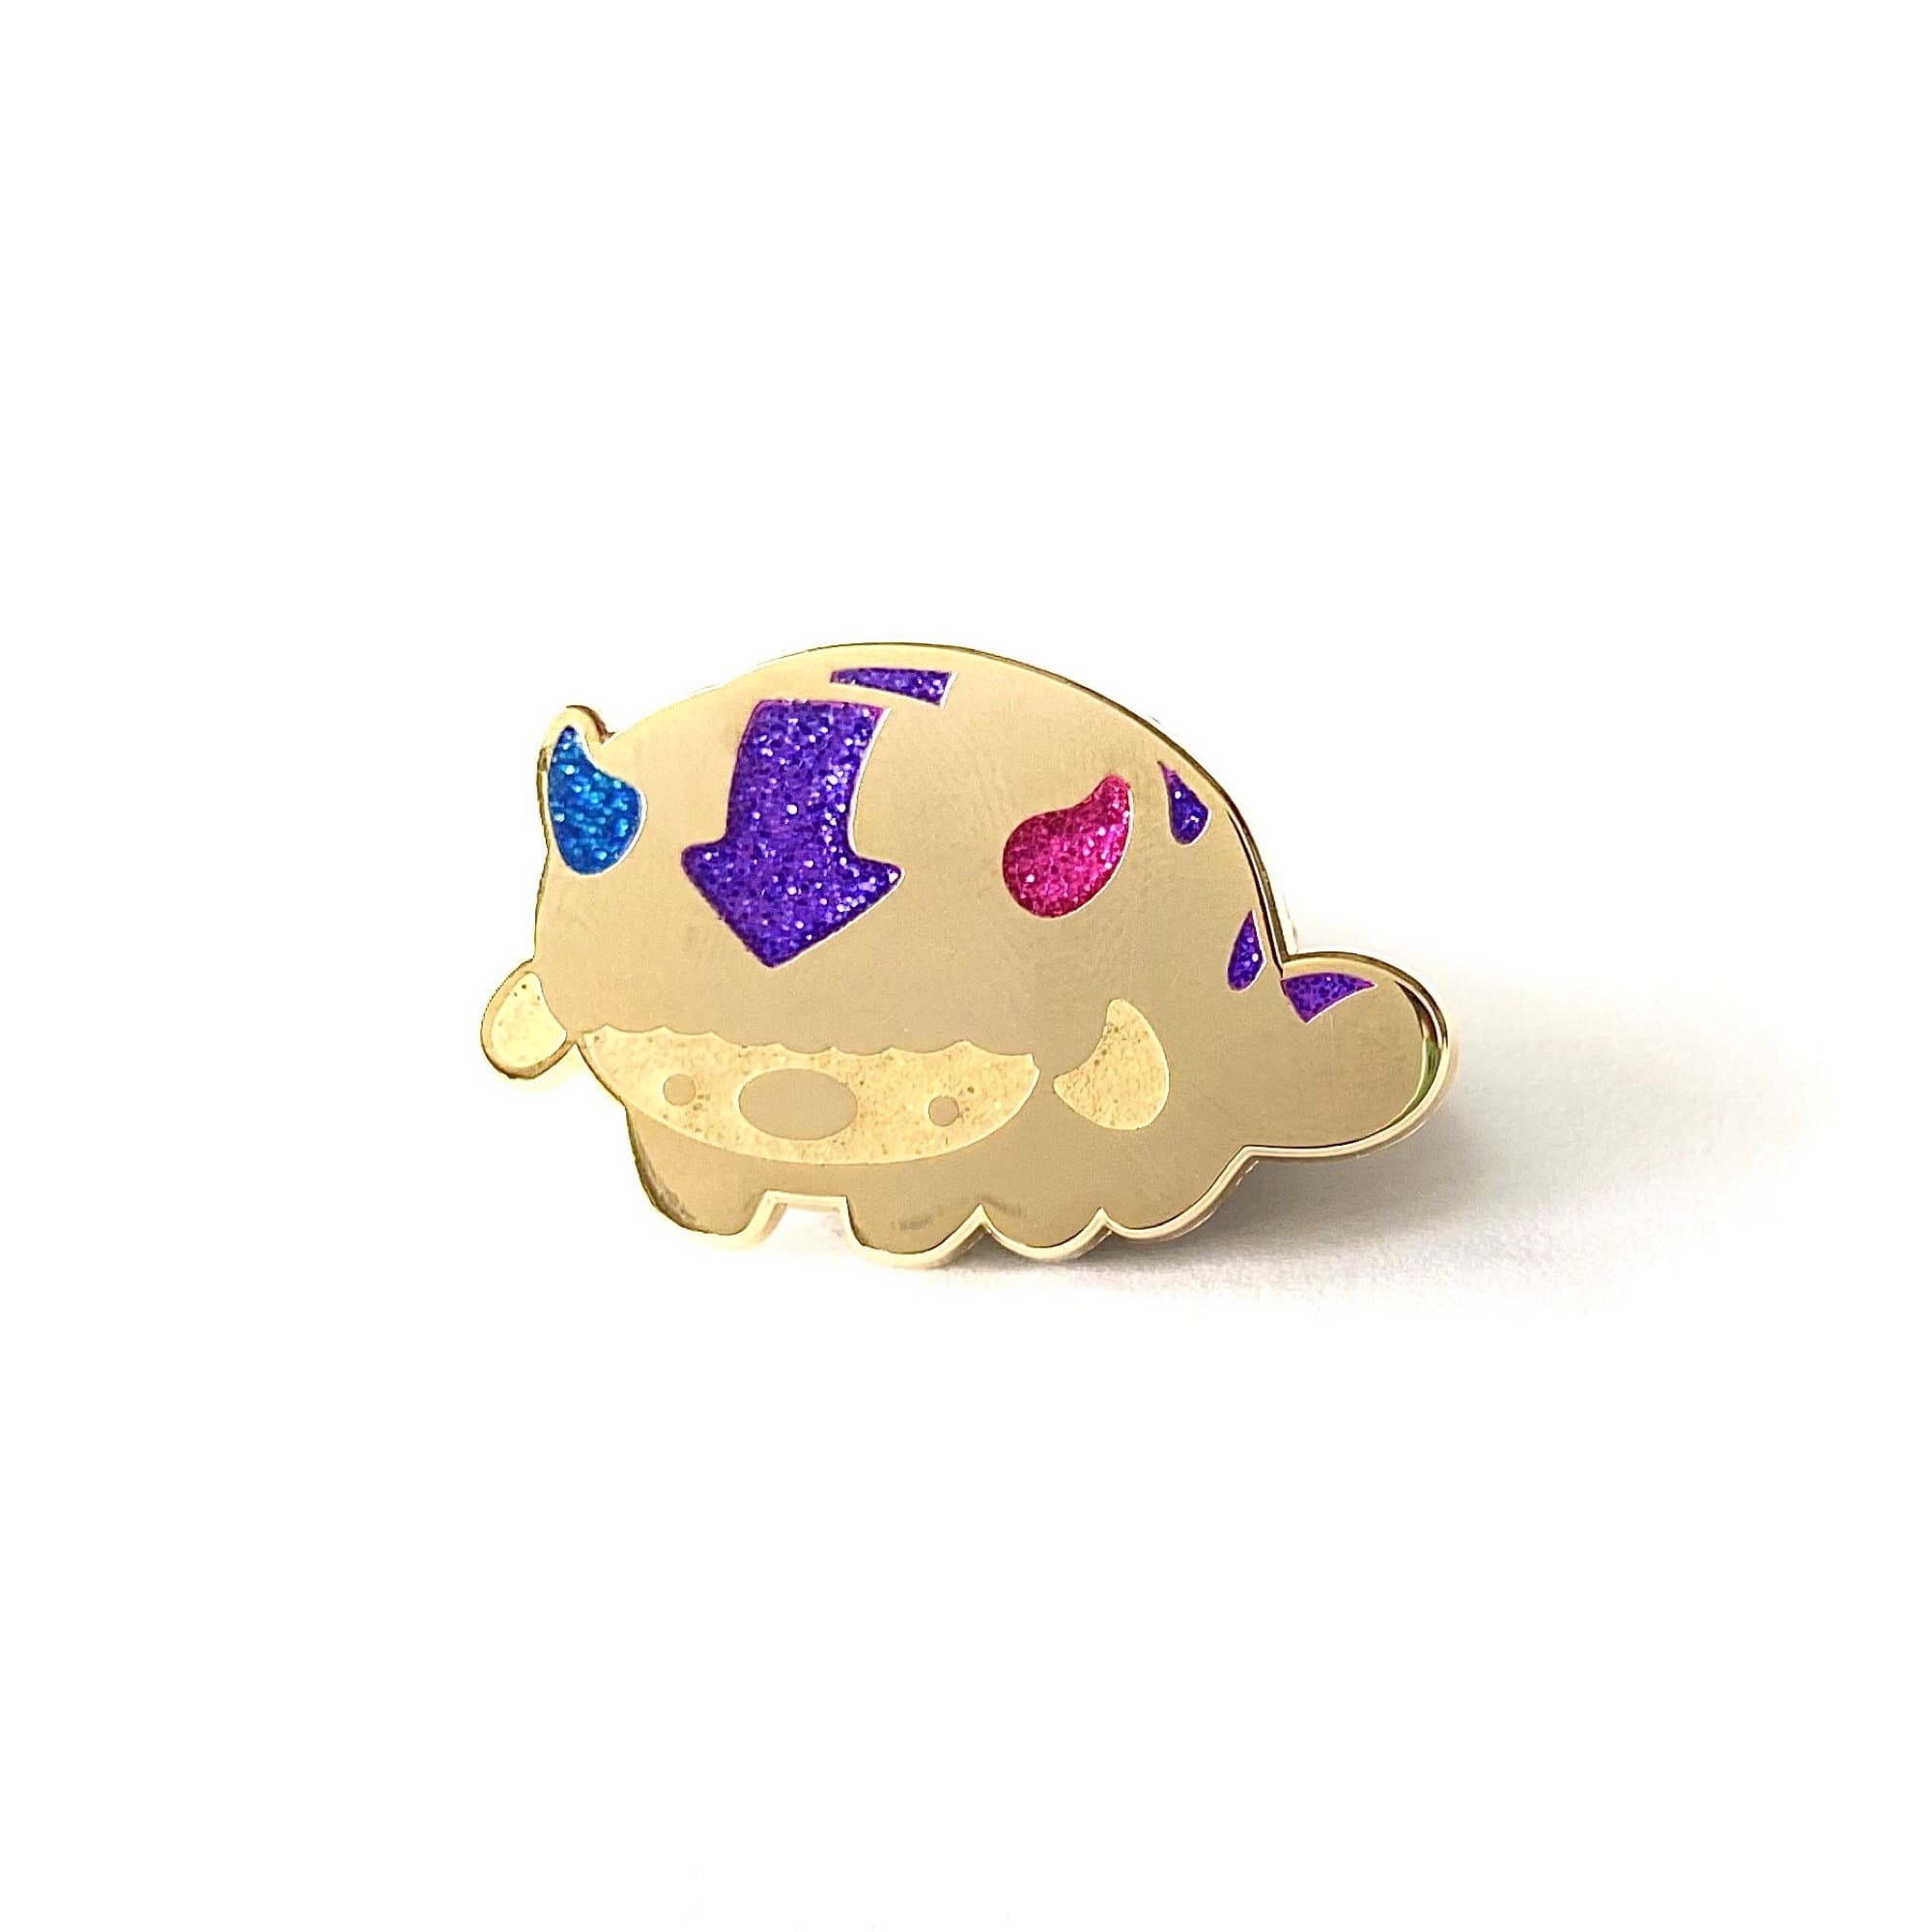 cuddlefish Bi-Son pin